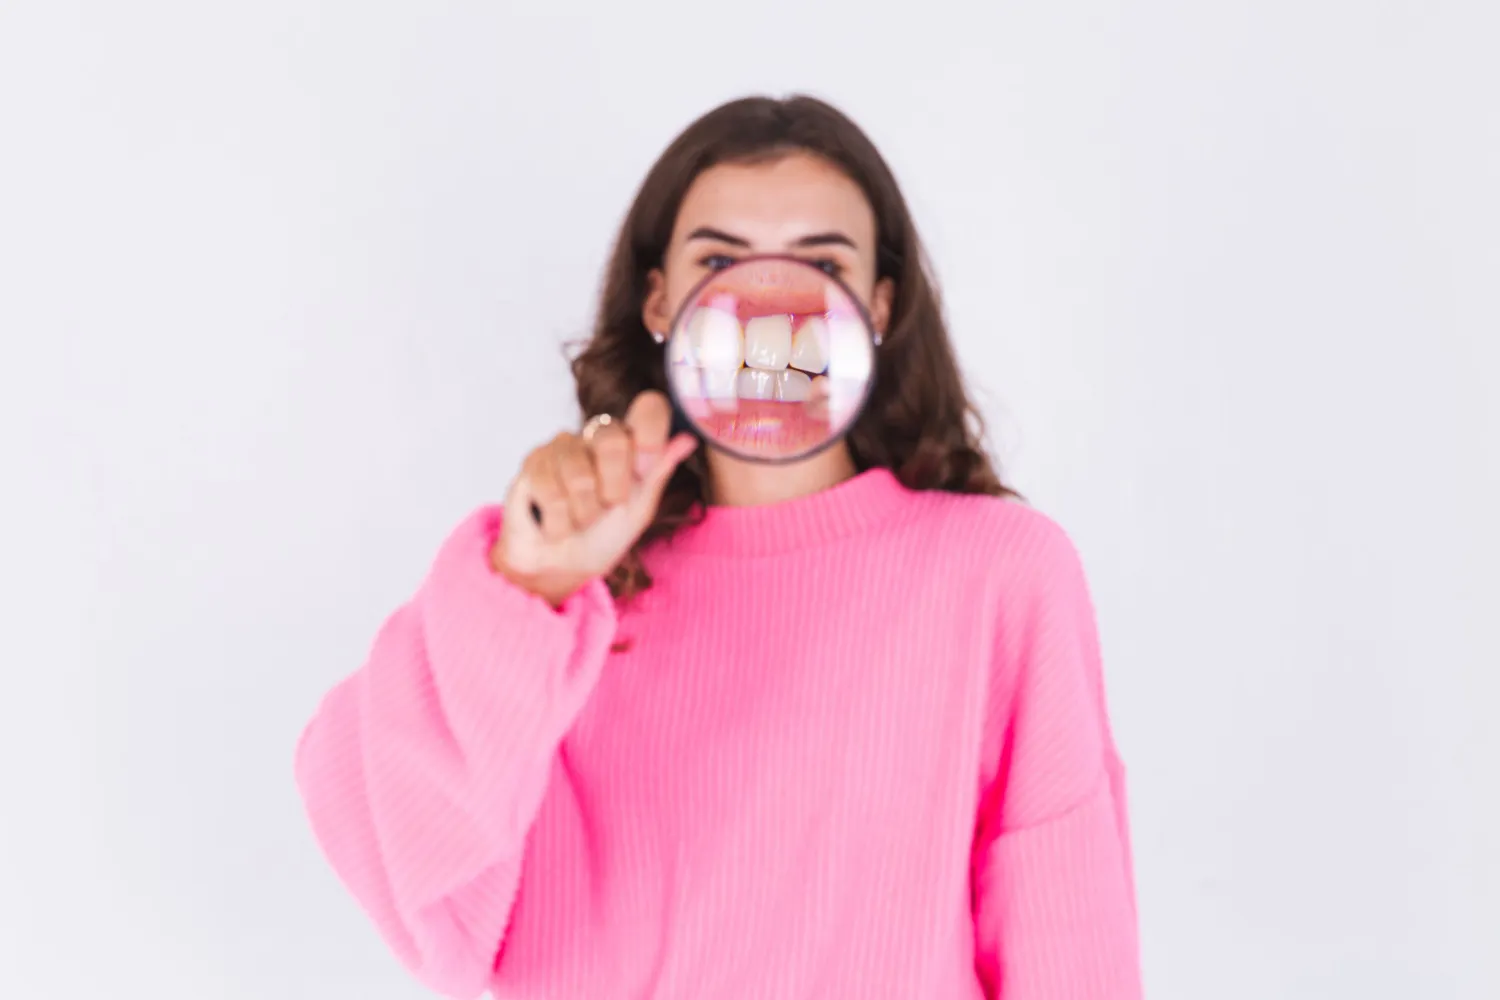 Broken Teeth Affect Your Mood